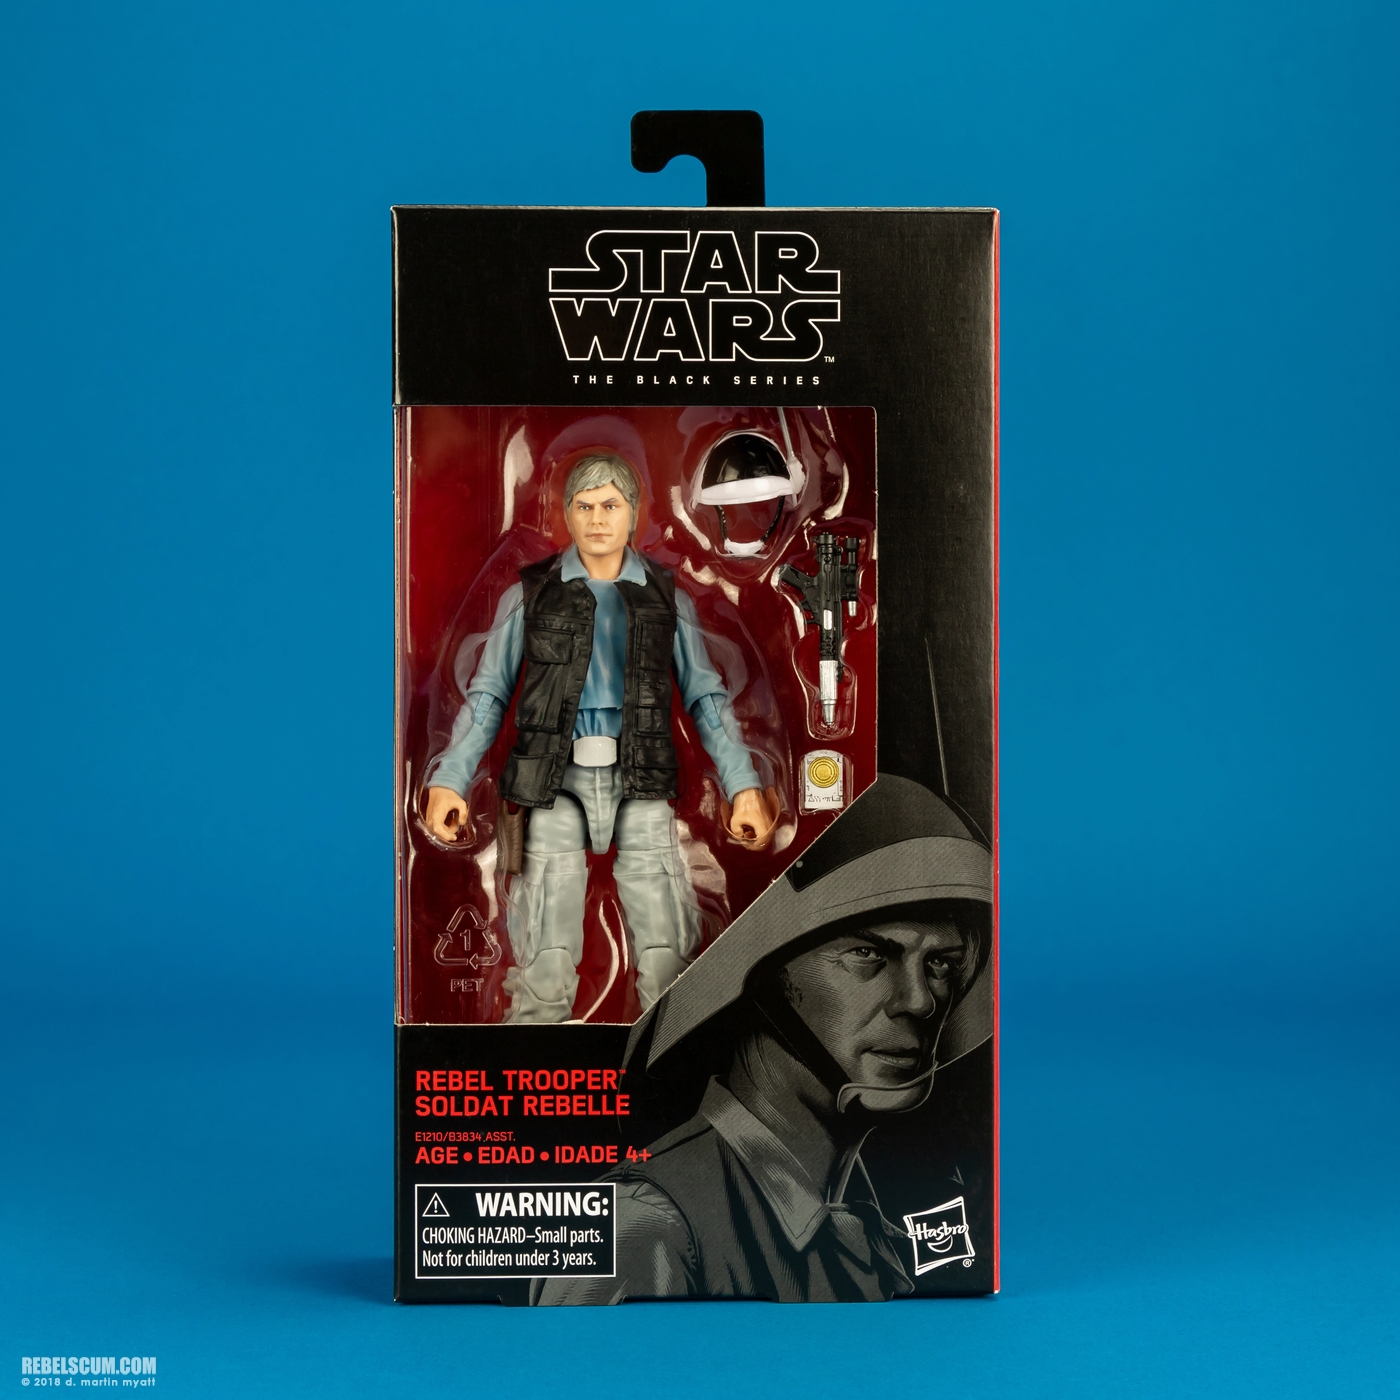 Rebel_Trooper-69-Star-Wars-The-Black-Series-6-inch-Hasbro-017.jpg